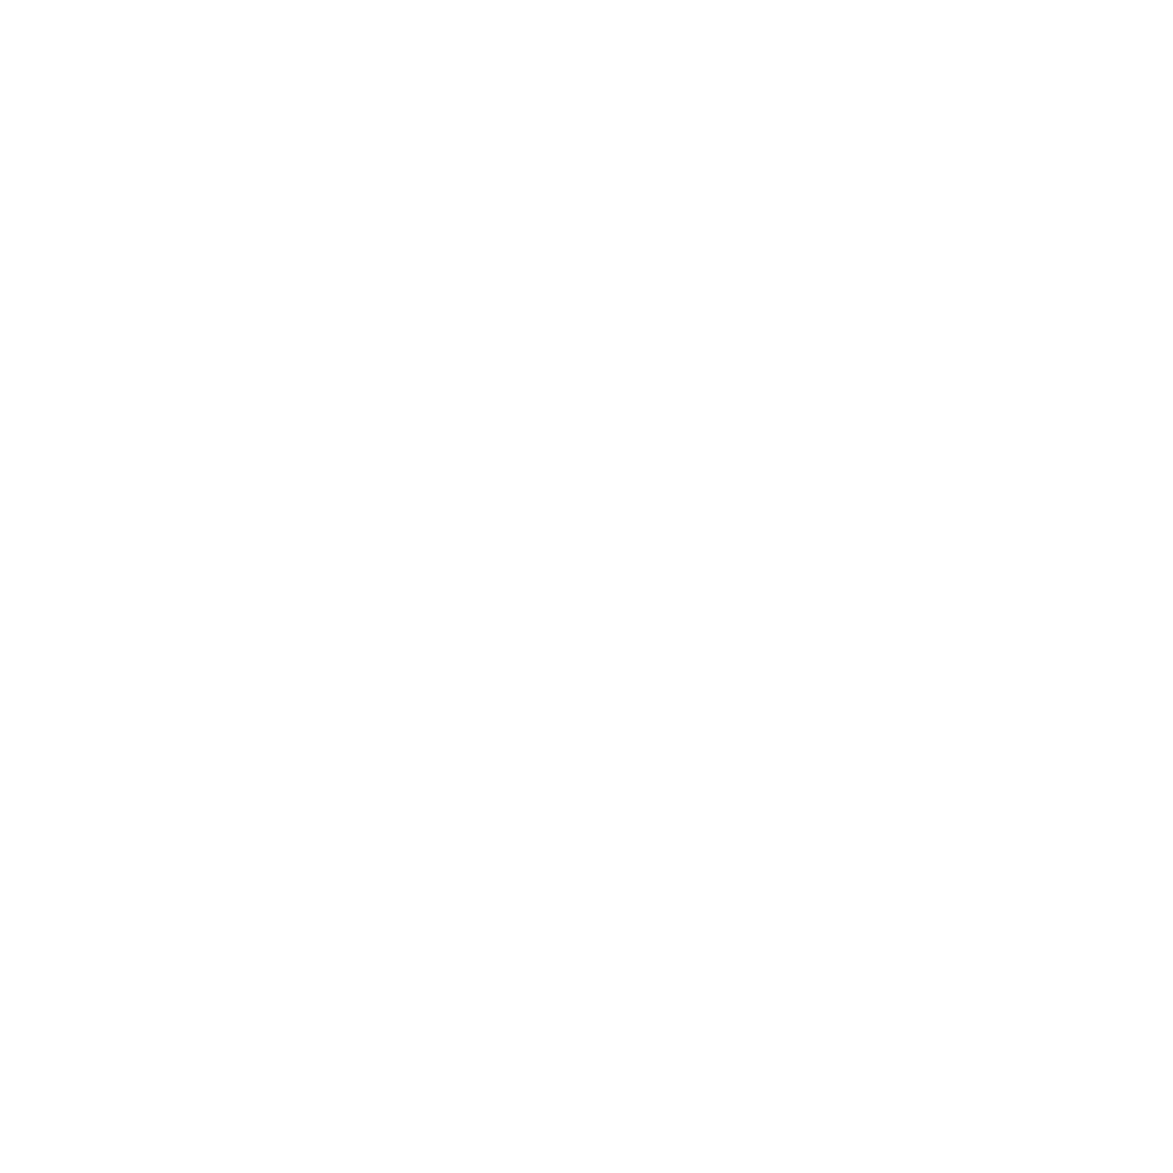 Washmasters Logo